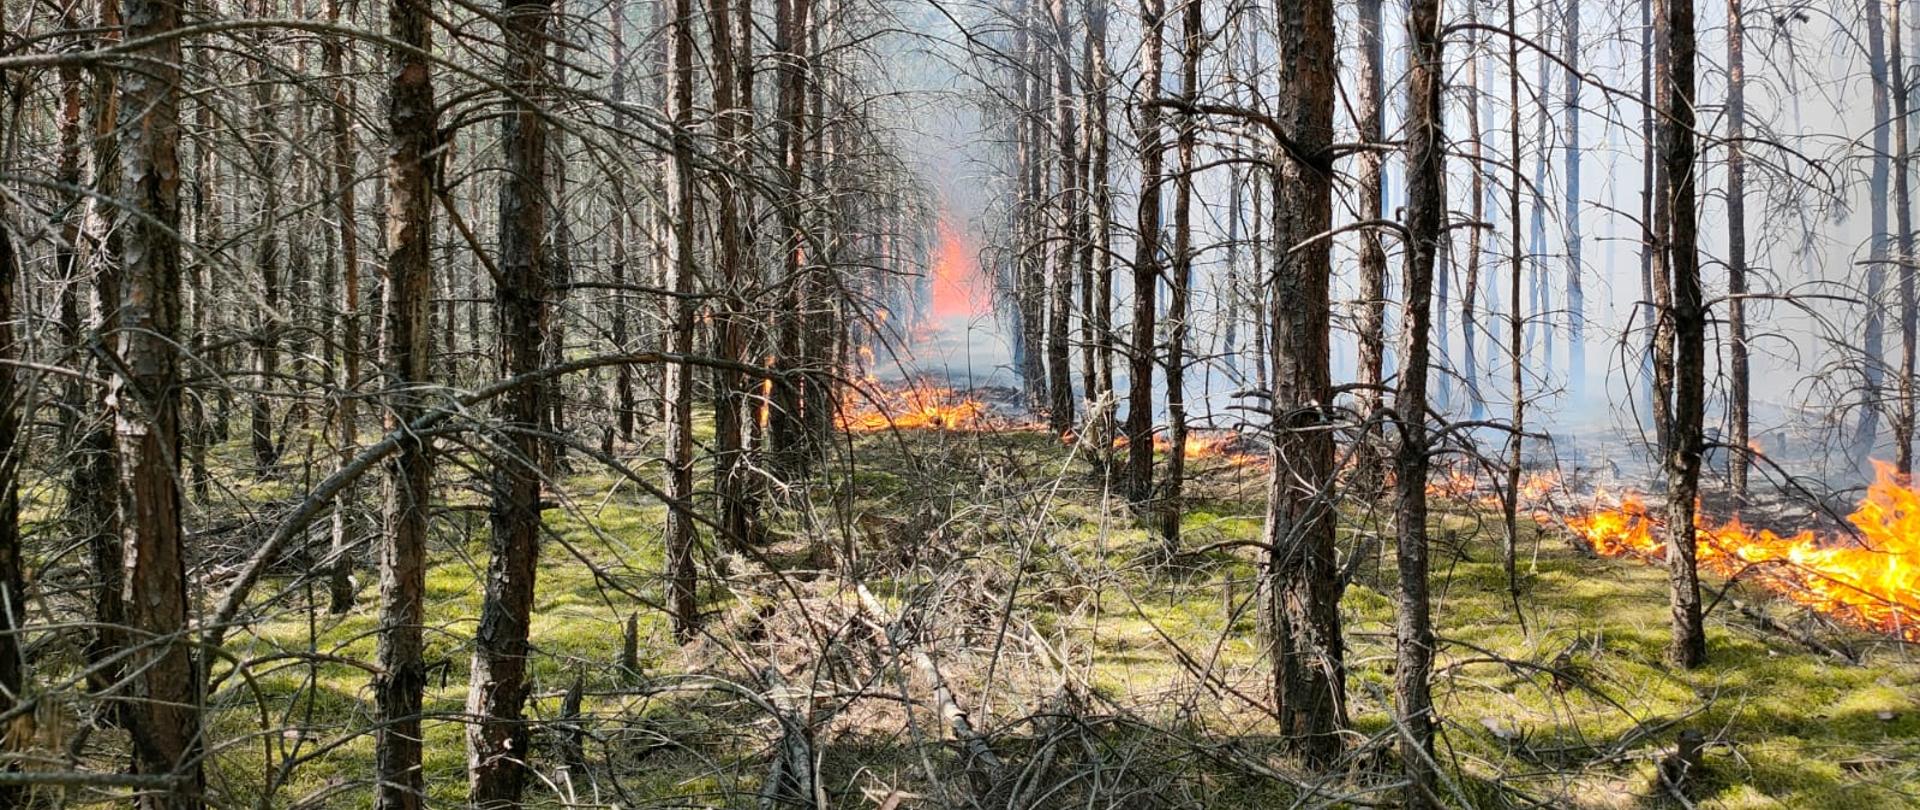 Widok lasu (młodnik sosnowy). Po prawej stronie paląca się pokrywa gleby natomiast w oddali z przodu wysokie płomienie.